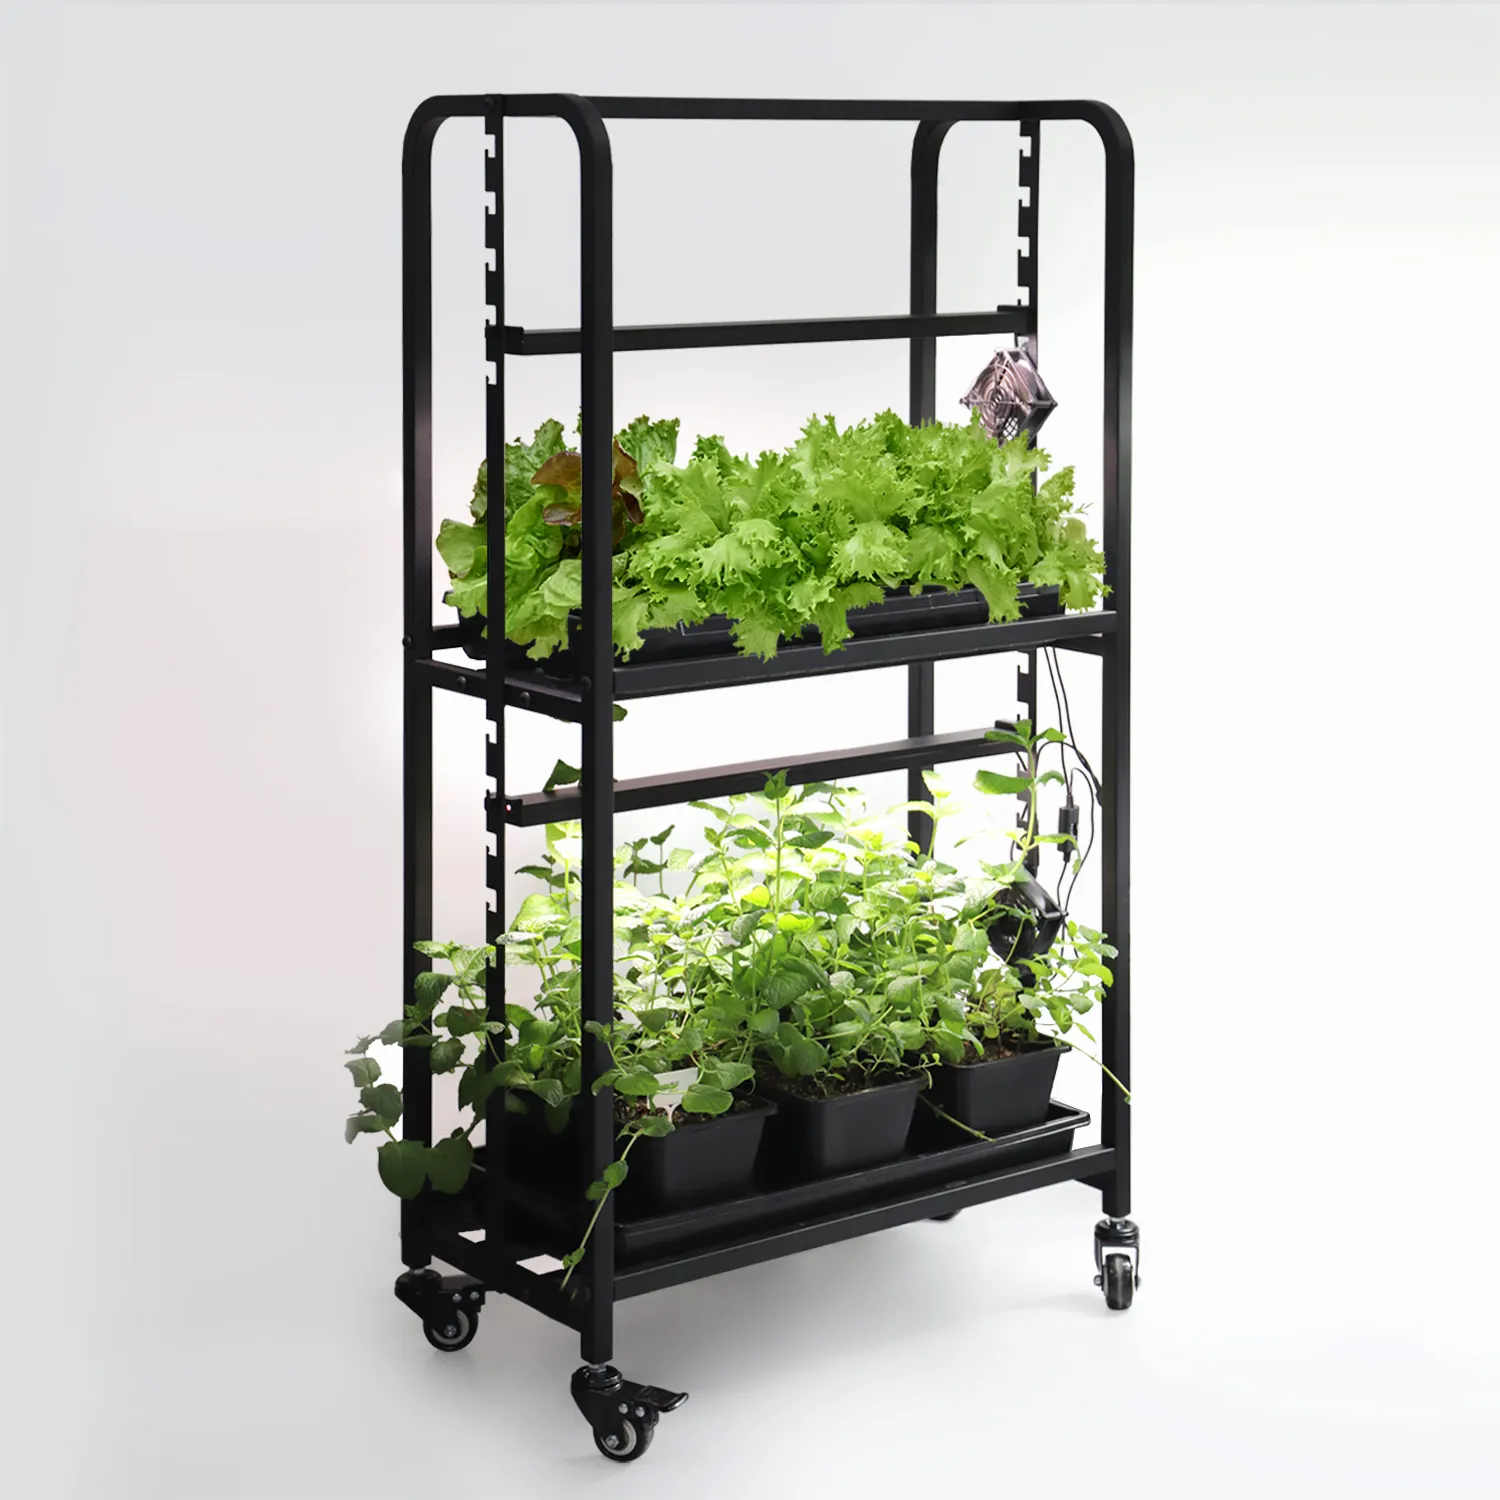 2 Tier nhà thông minh làm vườn trồng thẳng đứng hệ thống 32 Wát microgreen Clone LED kệ với bánh xe cho các nhà máy trong nhà